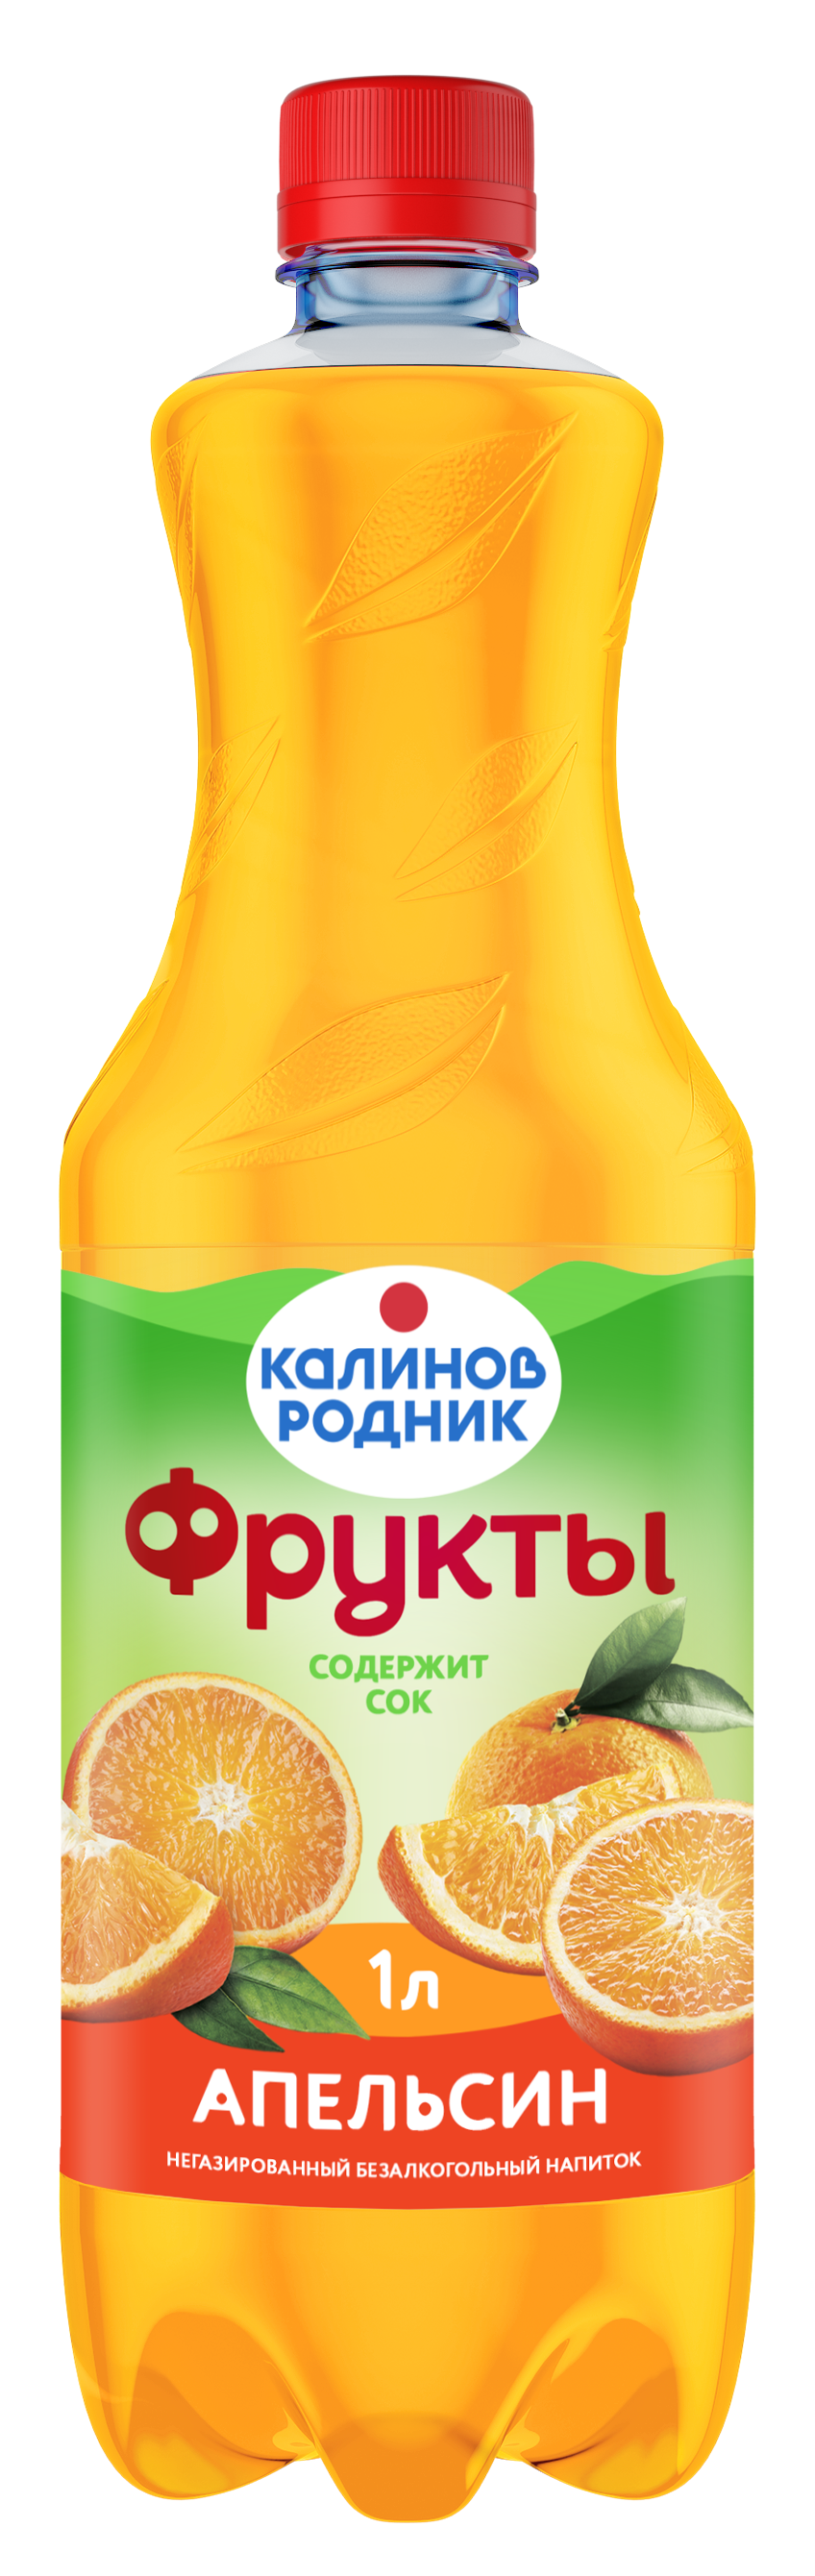 Напиток Калинов Родник Фрукты Апельсин 1л